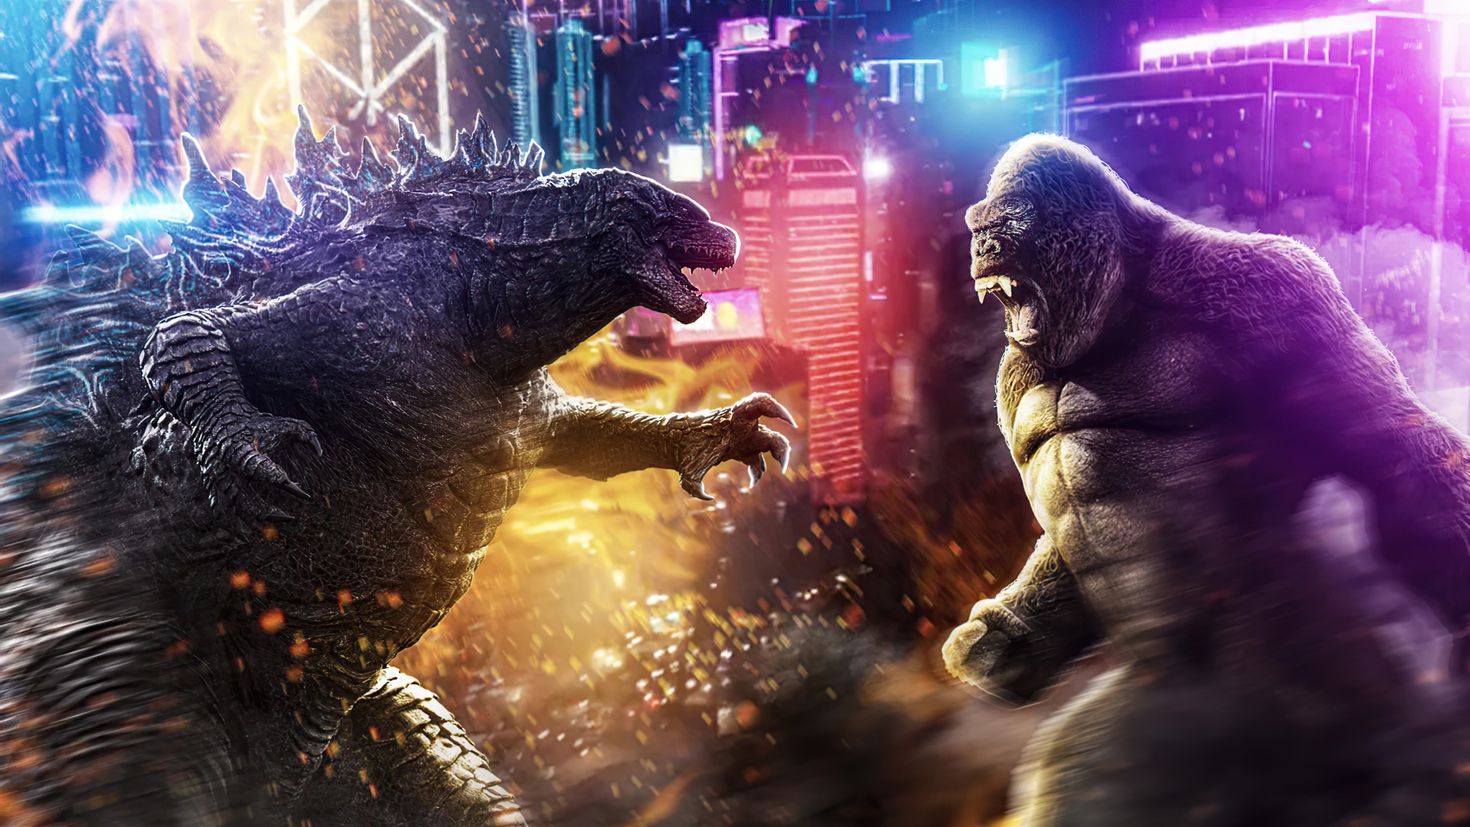 Godzilla x kong codes